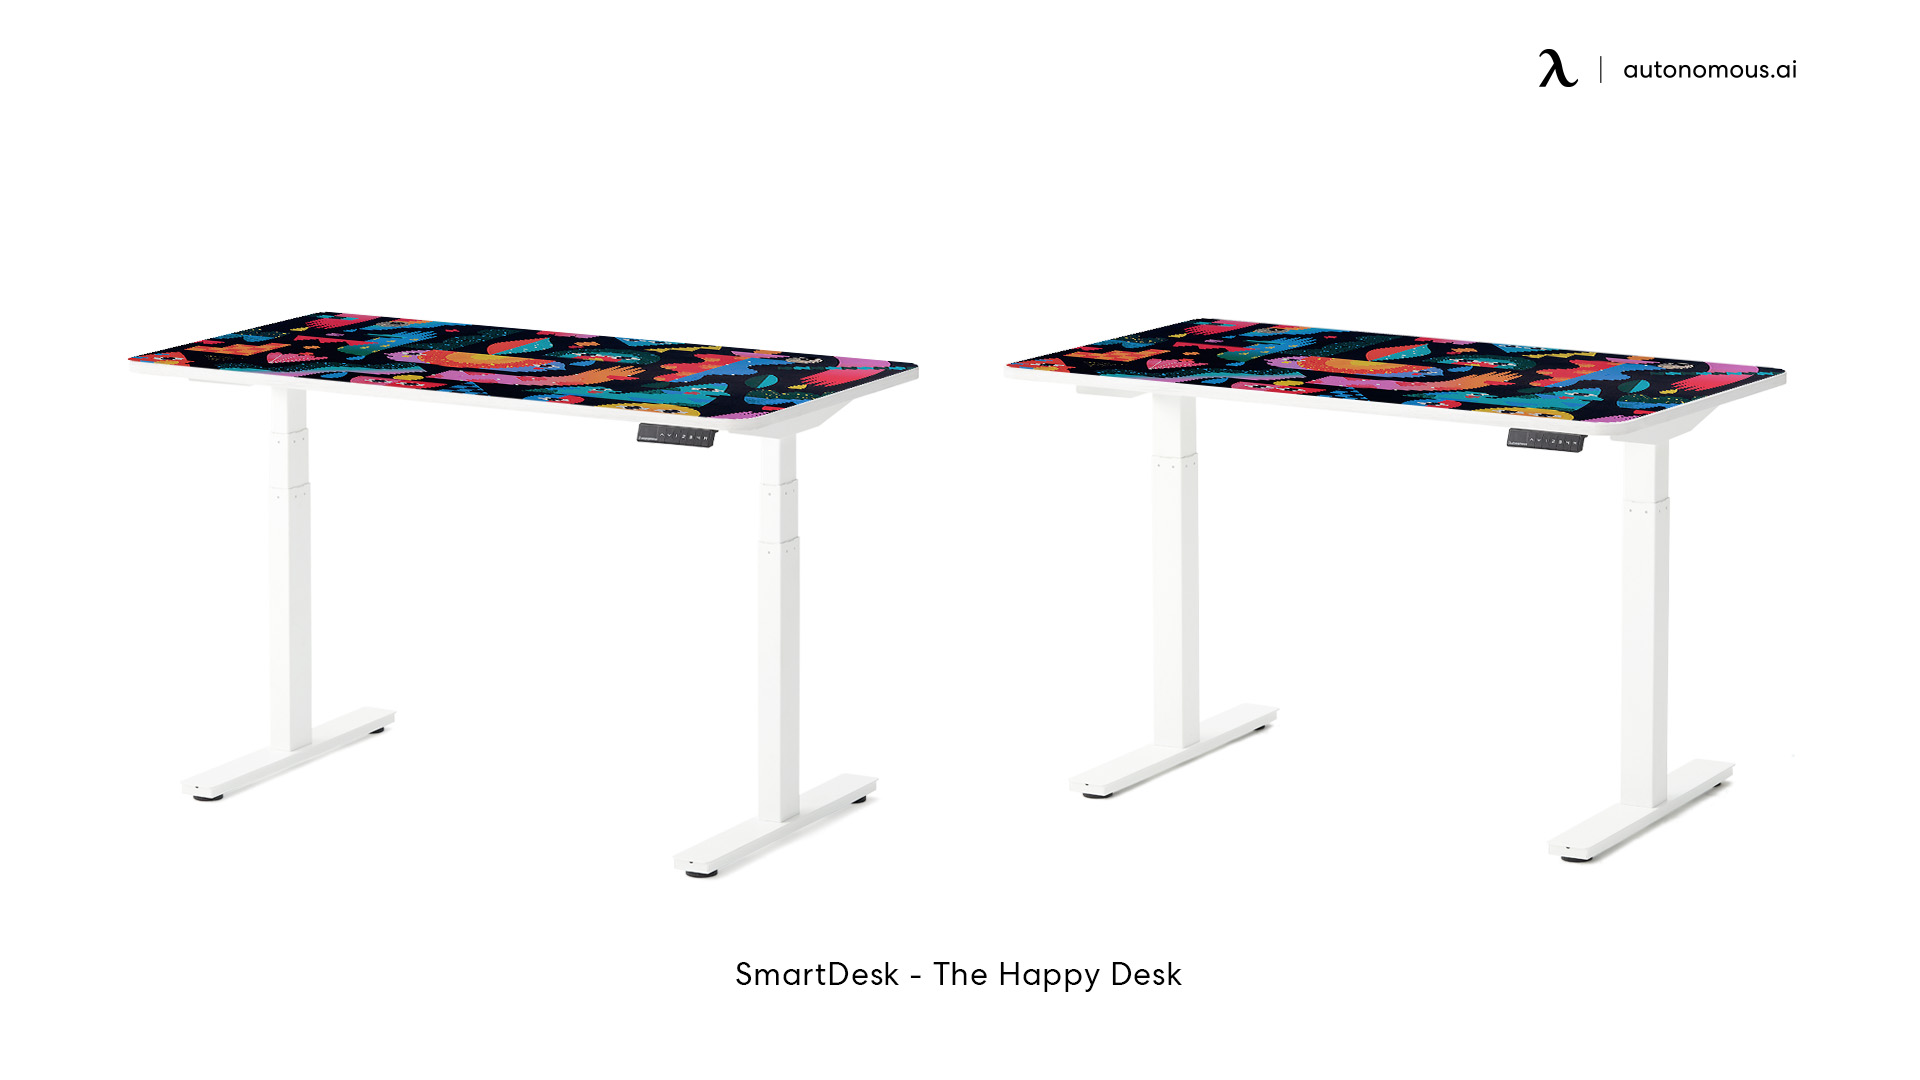 The Happy Desk by Autonomous